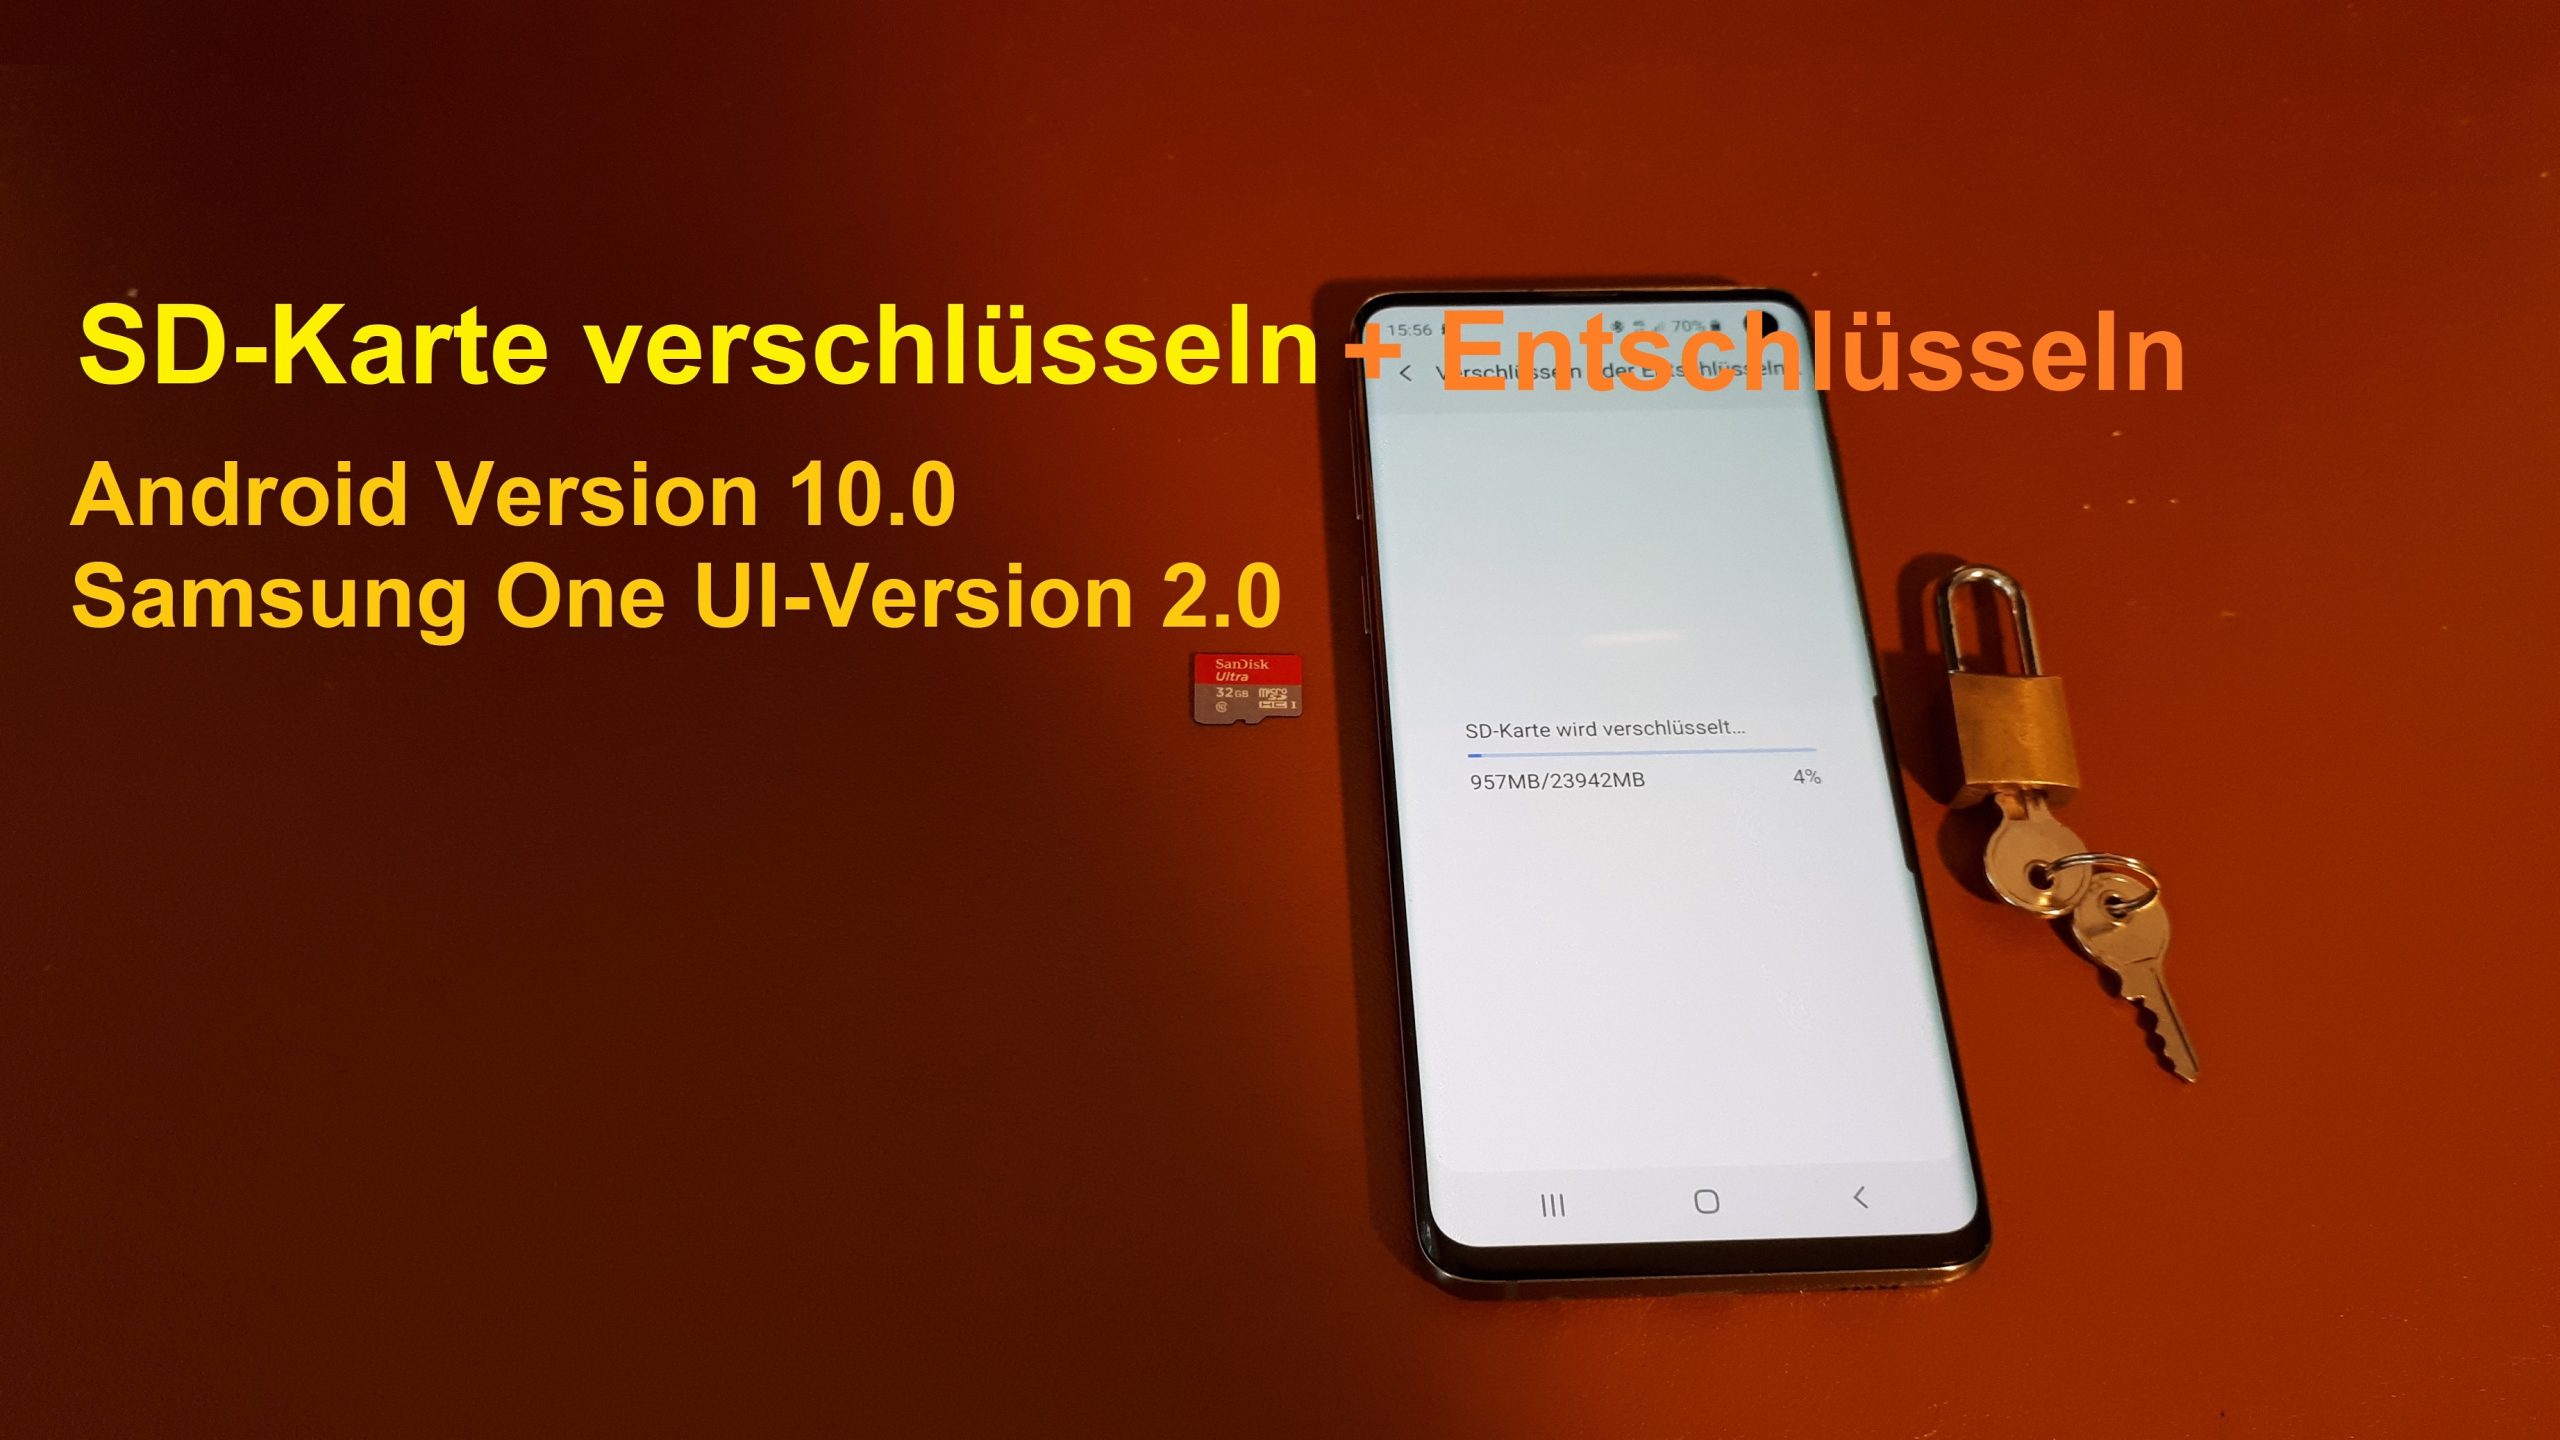 SD-Karte verschlüsseln und entschlüsseln unter Android 10